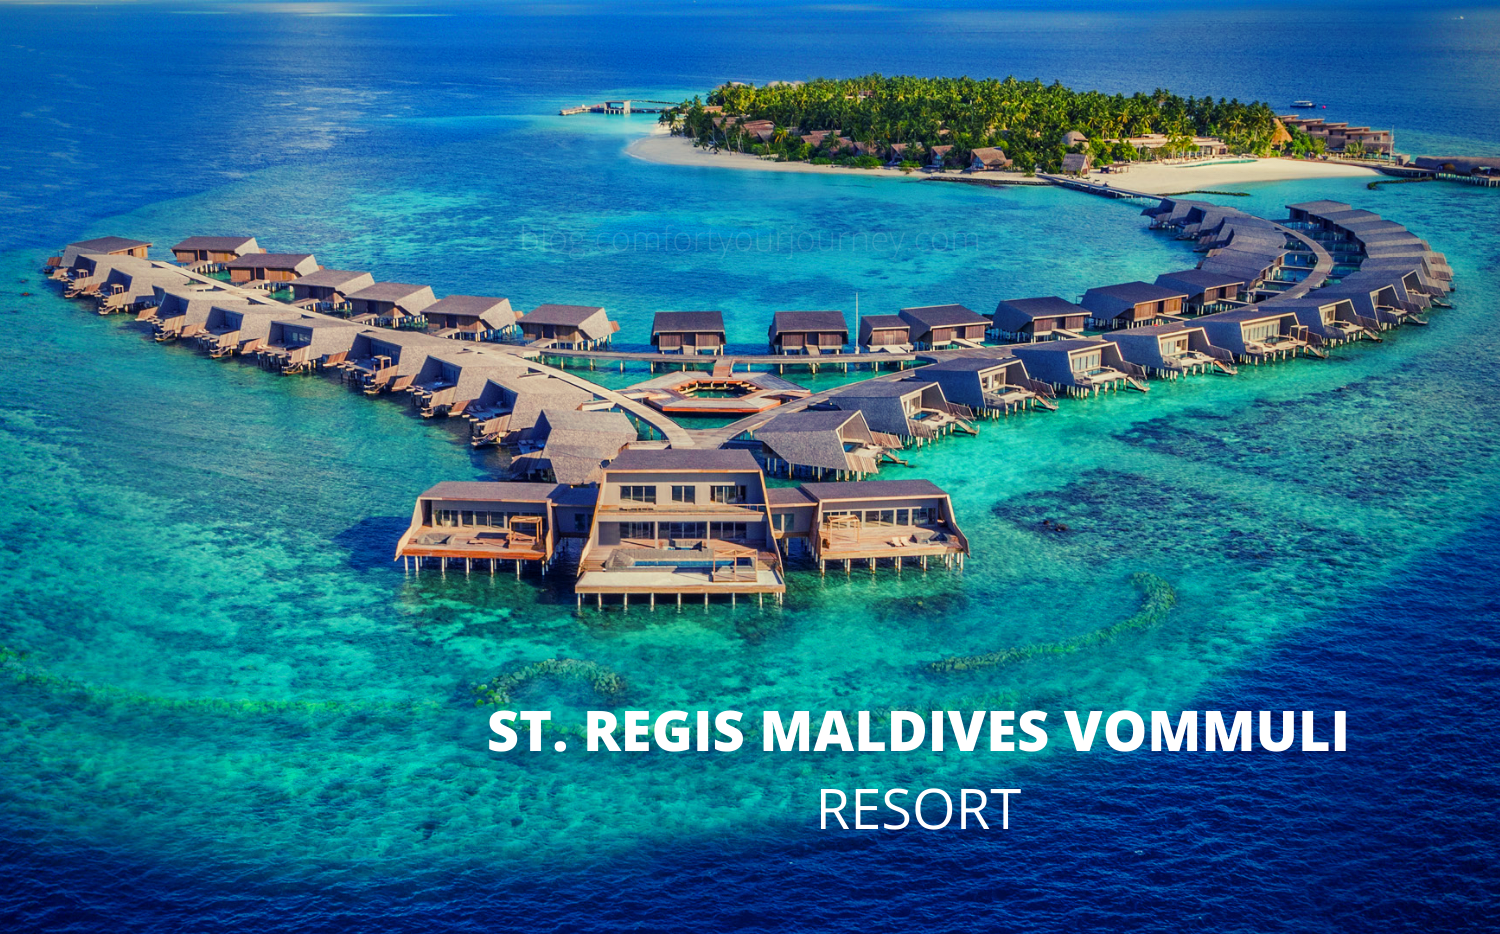 THE ST. REGIS MALDIVES VOMMULI RESORT